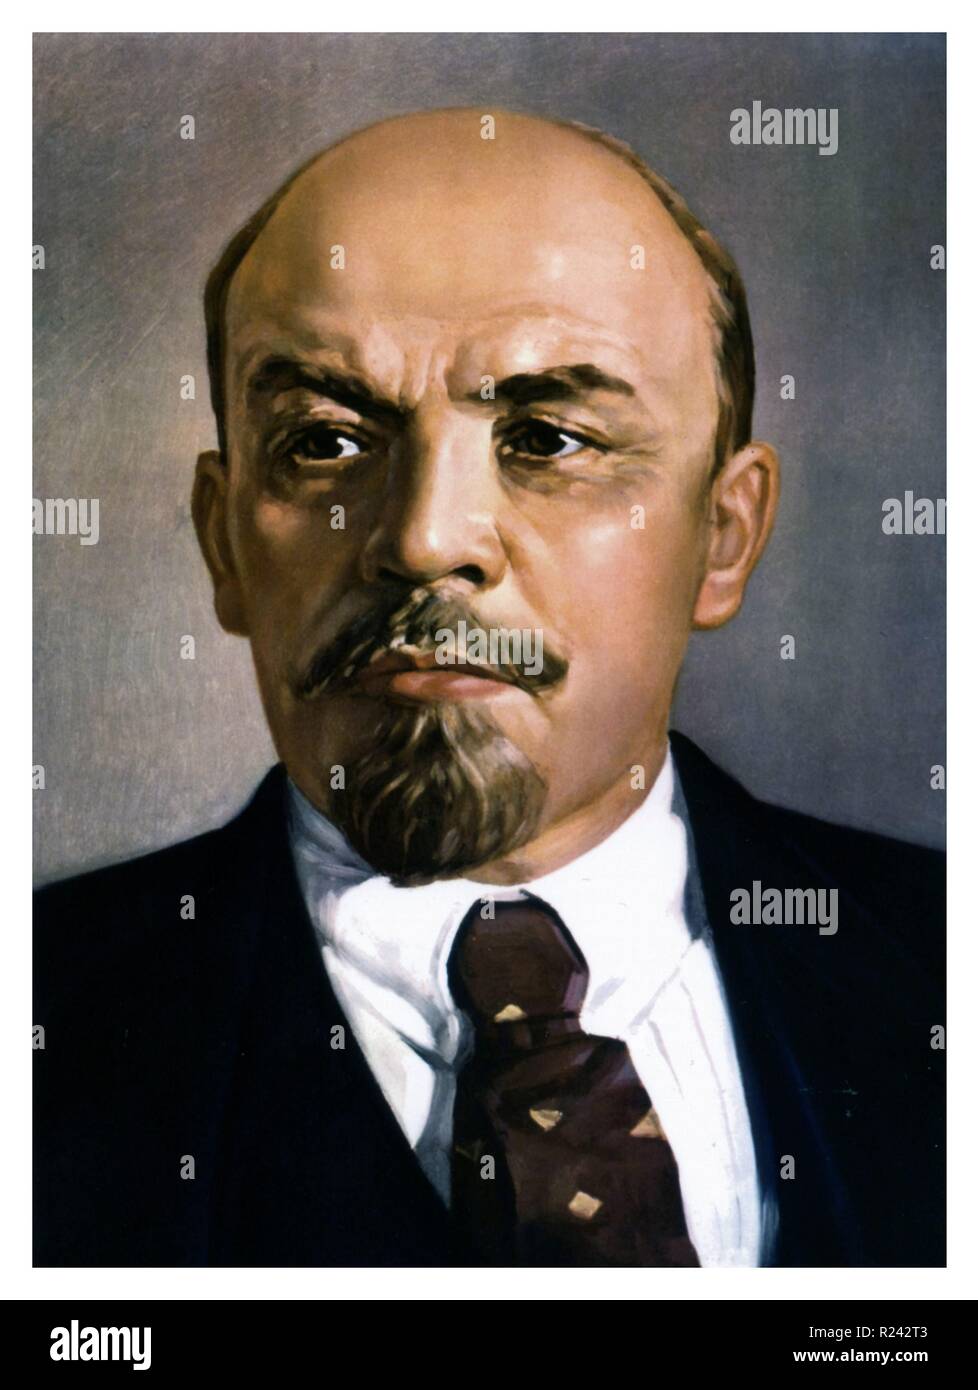 Wladimir Iljitsch Uljanov alias Lenin (22. April 1870 - 21. Januar 1924) eine Russische kommunistische Revolutionär war, Politiker und politische Theoretiker Stockfoto